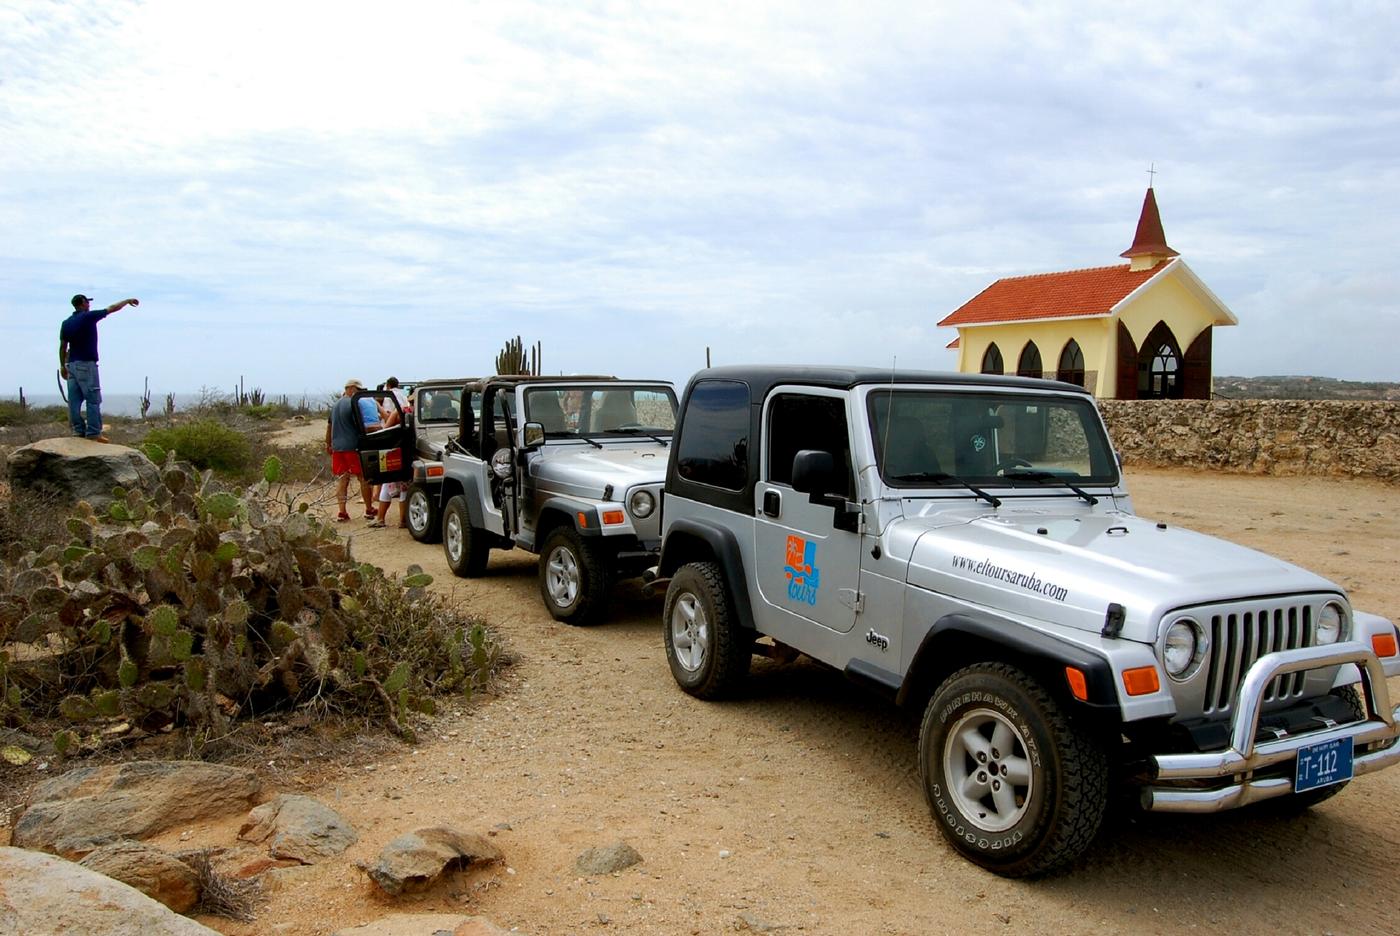 Best jeep tours in aruba